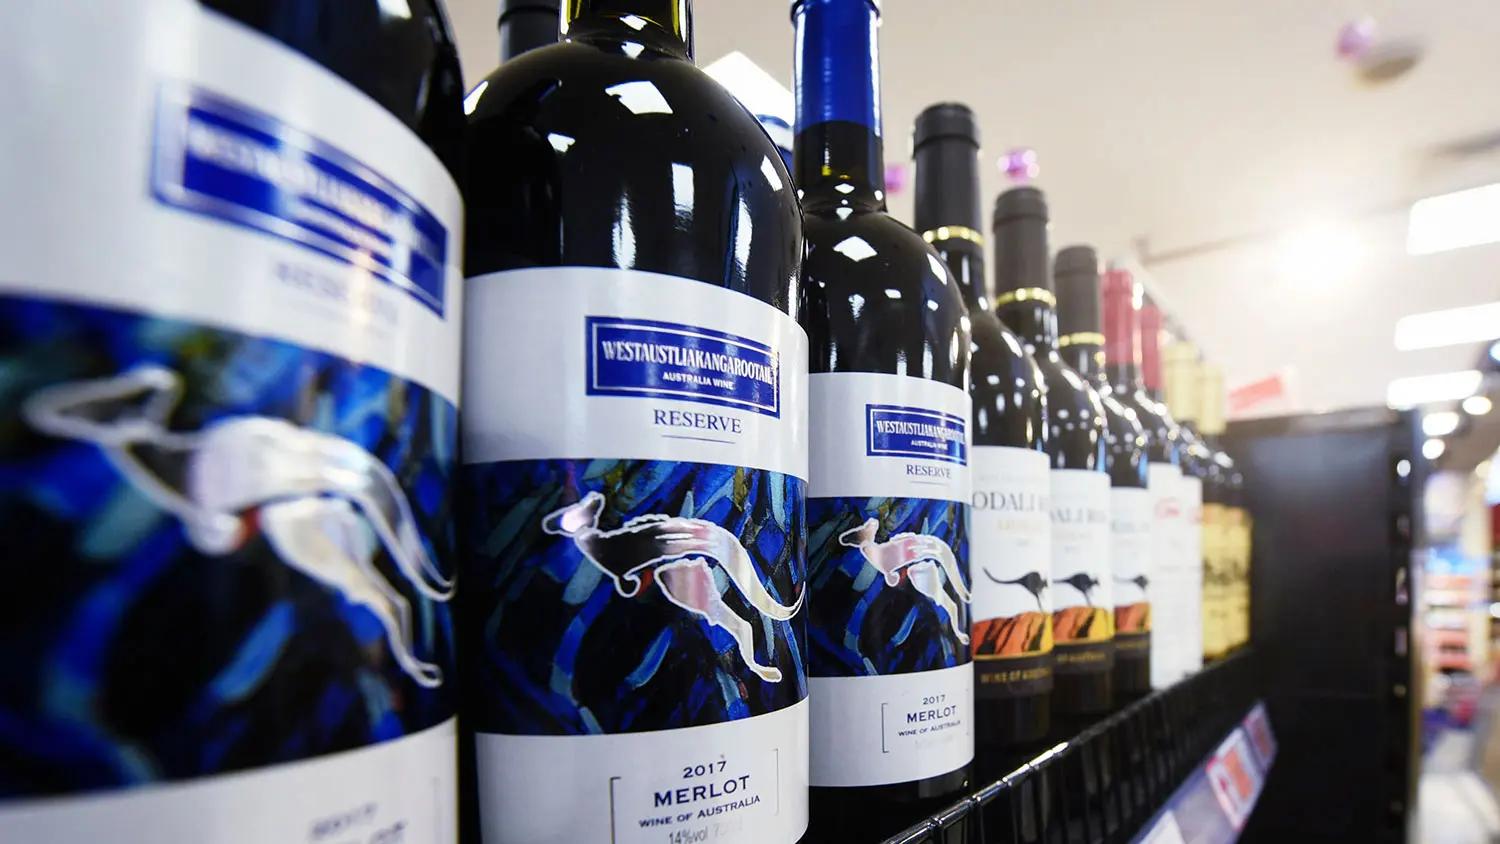 19國議員發起「全球買澳洲葡萄酒運動」 對抗中共霸凌